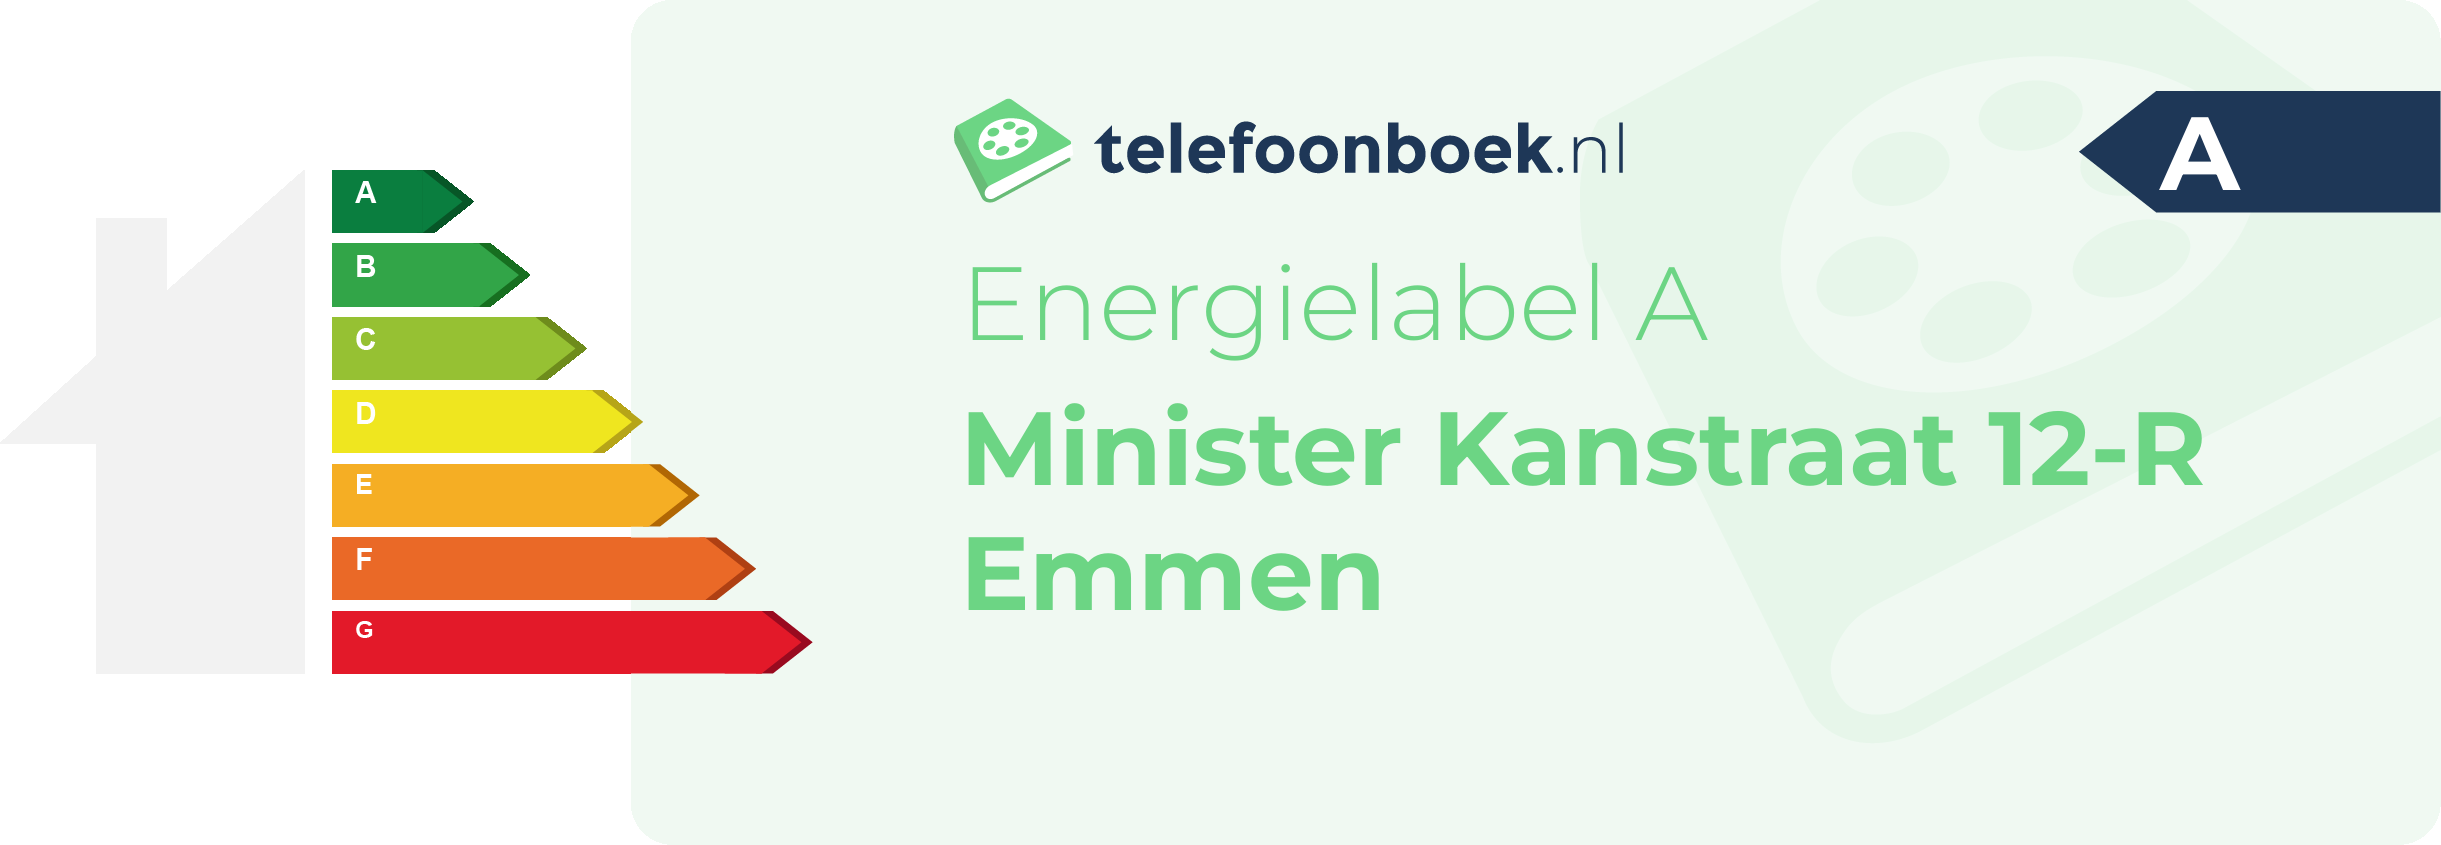 Energielabel Minister Kanstraat 12-R Emmen